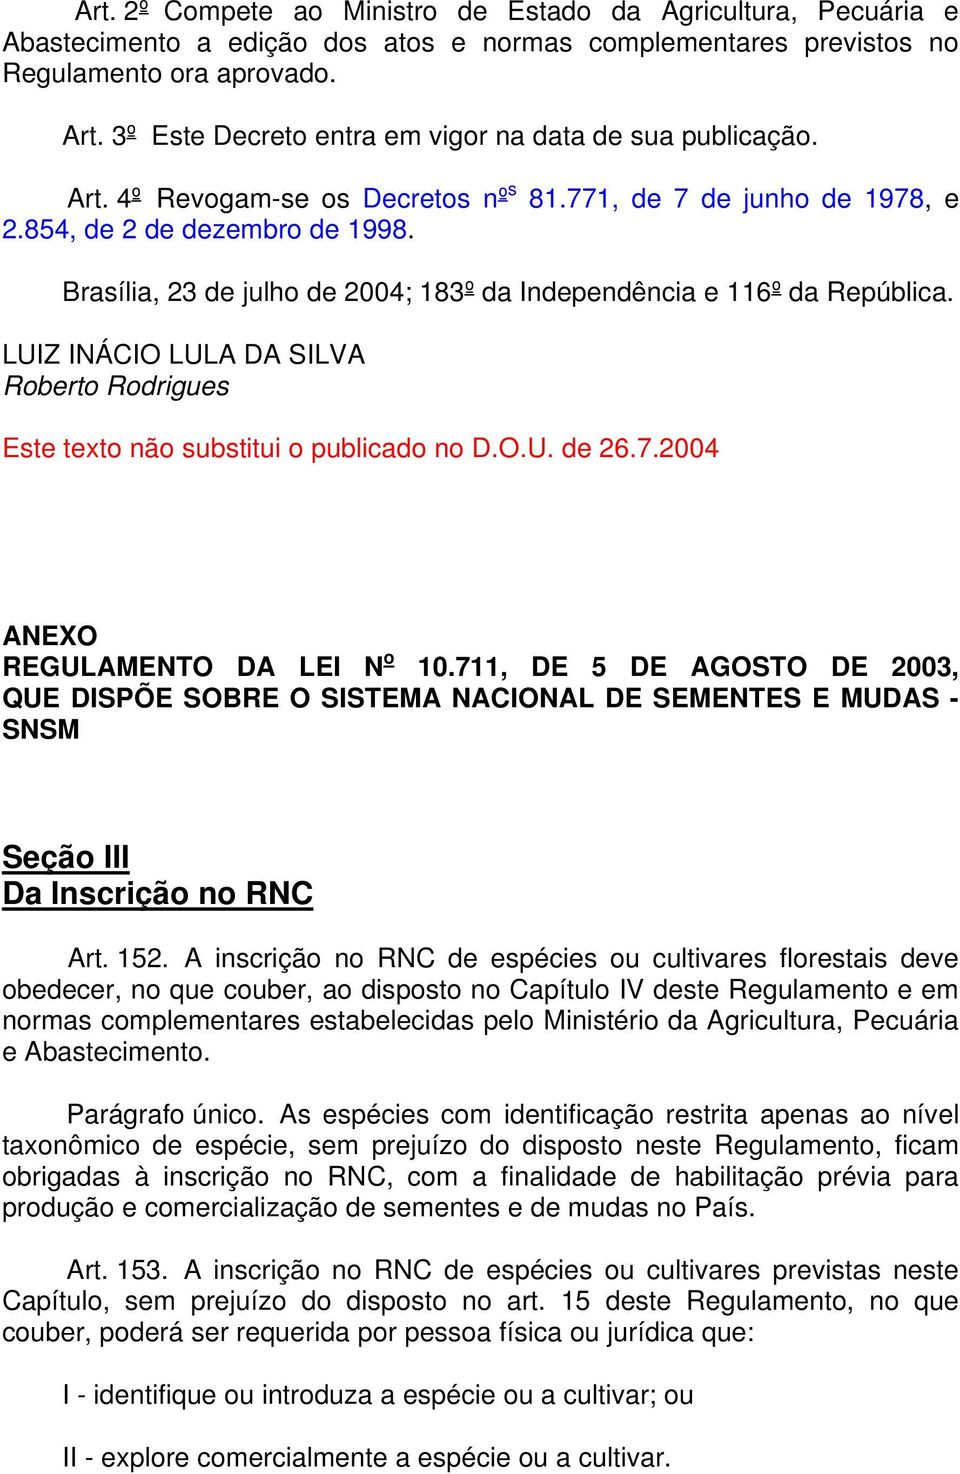 Brasília, 23 de julho de 2004; 183º da Independência e 116º da República. LUIZ INÁCIO LULA DA SILVA Roberto Rodrigues Este texto não substitui o publicado no D.O.U. de 26.7.